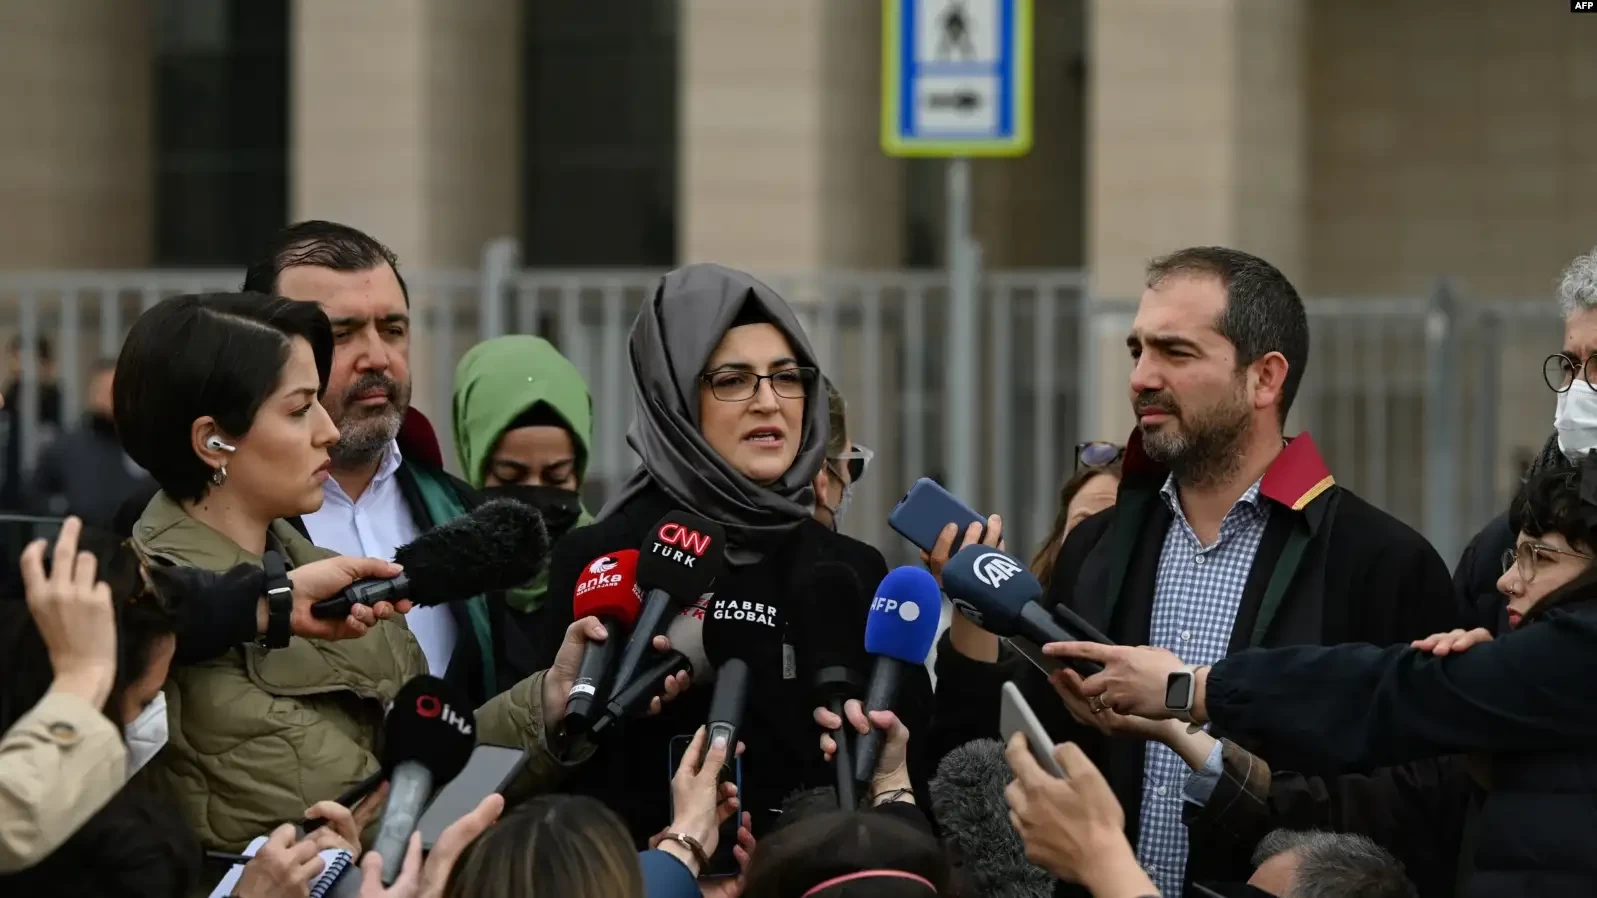 Hatice Cengiz, tunangan dari jurnalis Jamal Khashoggi, menjawab pertanyaan dari para jurnalis setelah pengadilan memutuskan untuk menunda persidangan pembunuhan Khashoggi yang melibatkan 26 tersangka, di Istanbul, Turki, pada 7 April 2022. (Foto: AFP)